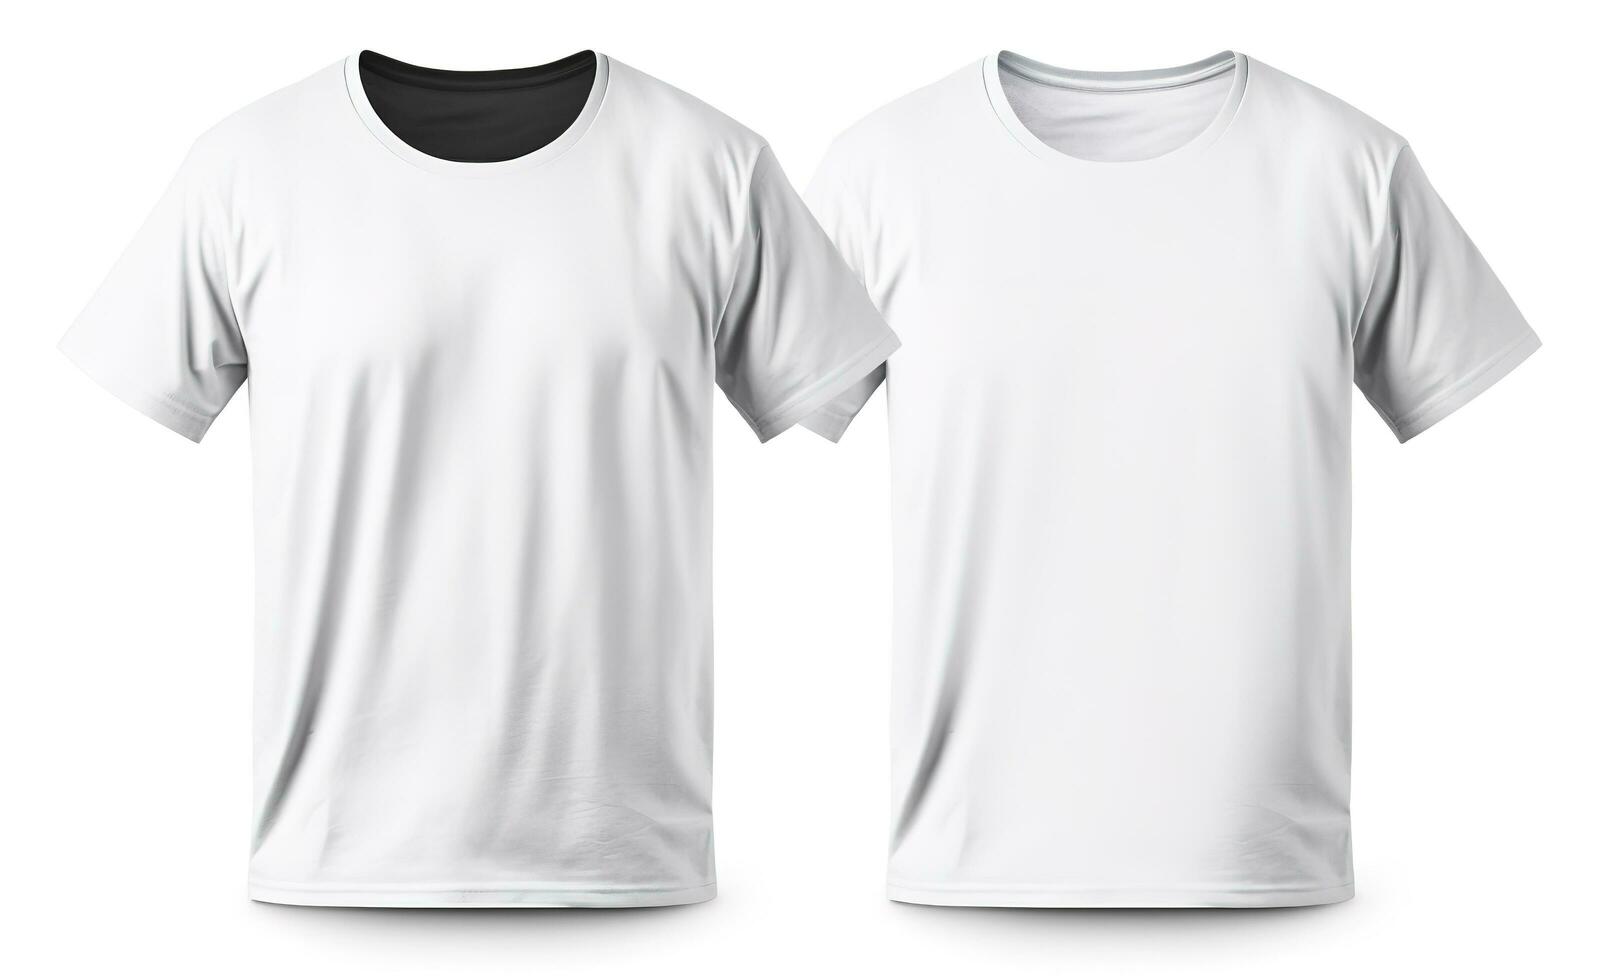 hombres blanco blanco t camisa, plantilla, desde dos lados, aislado en blanco fondo, generar ai foto